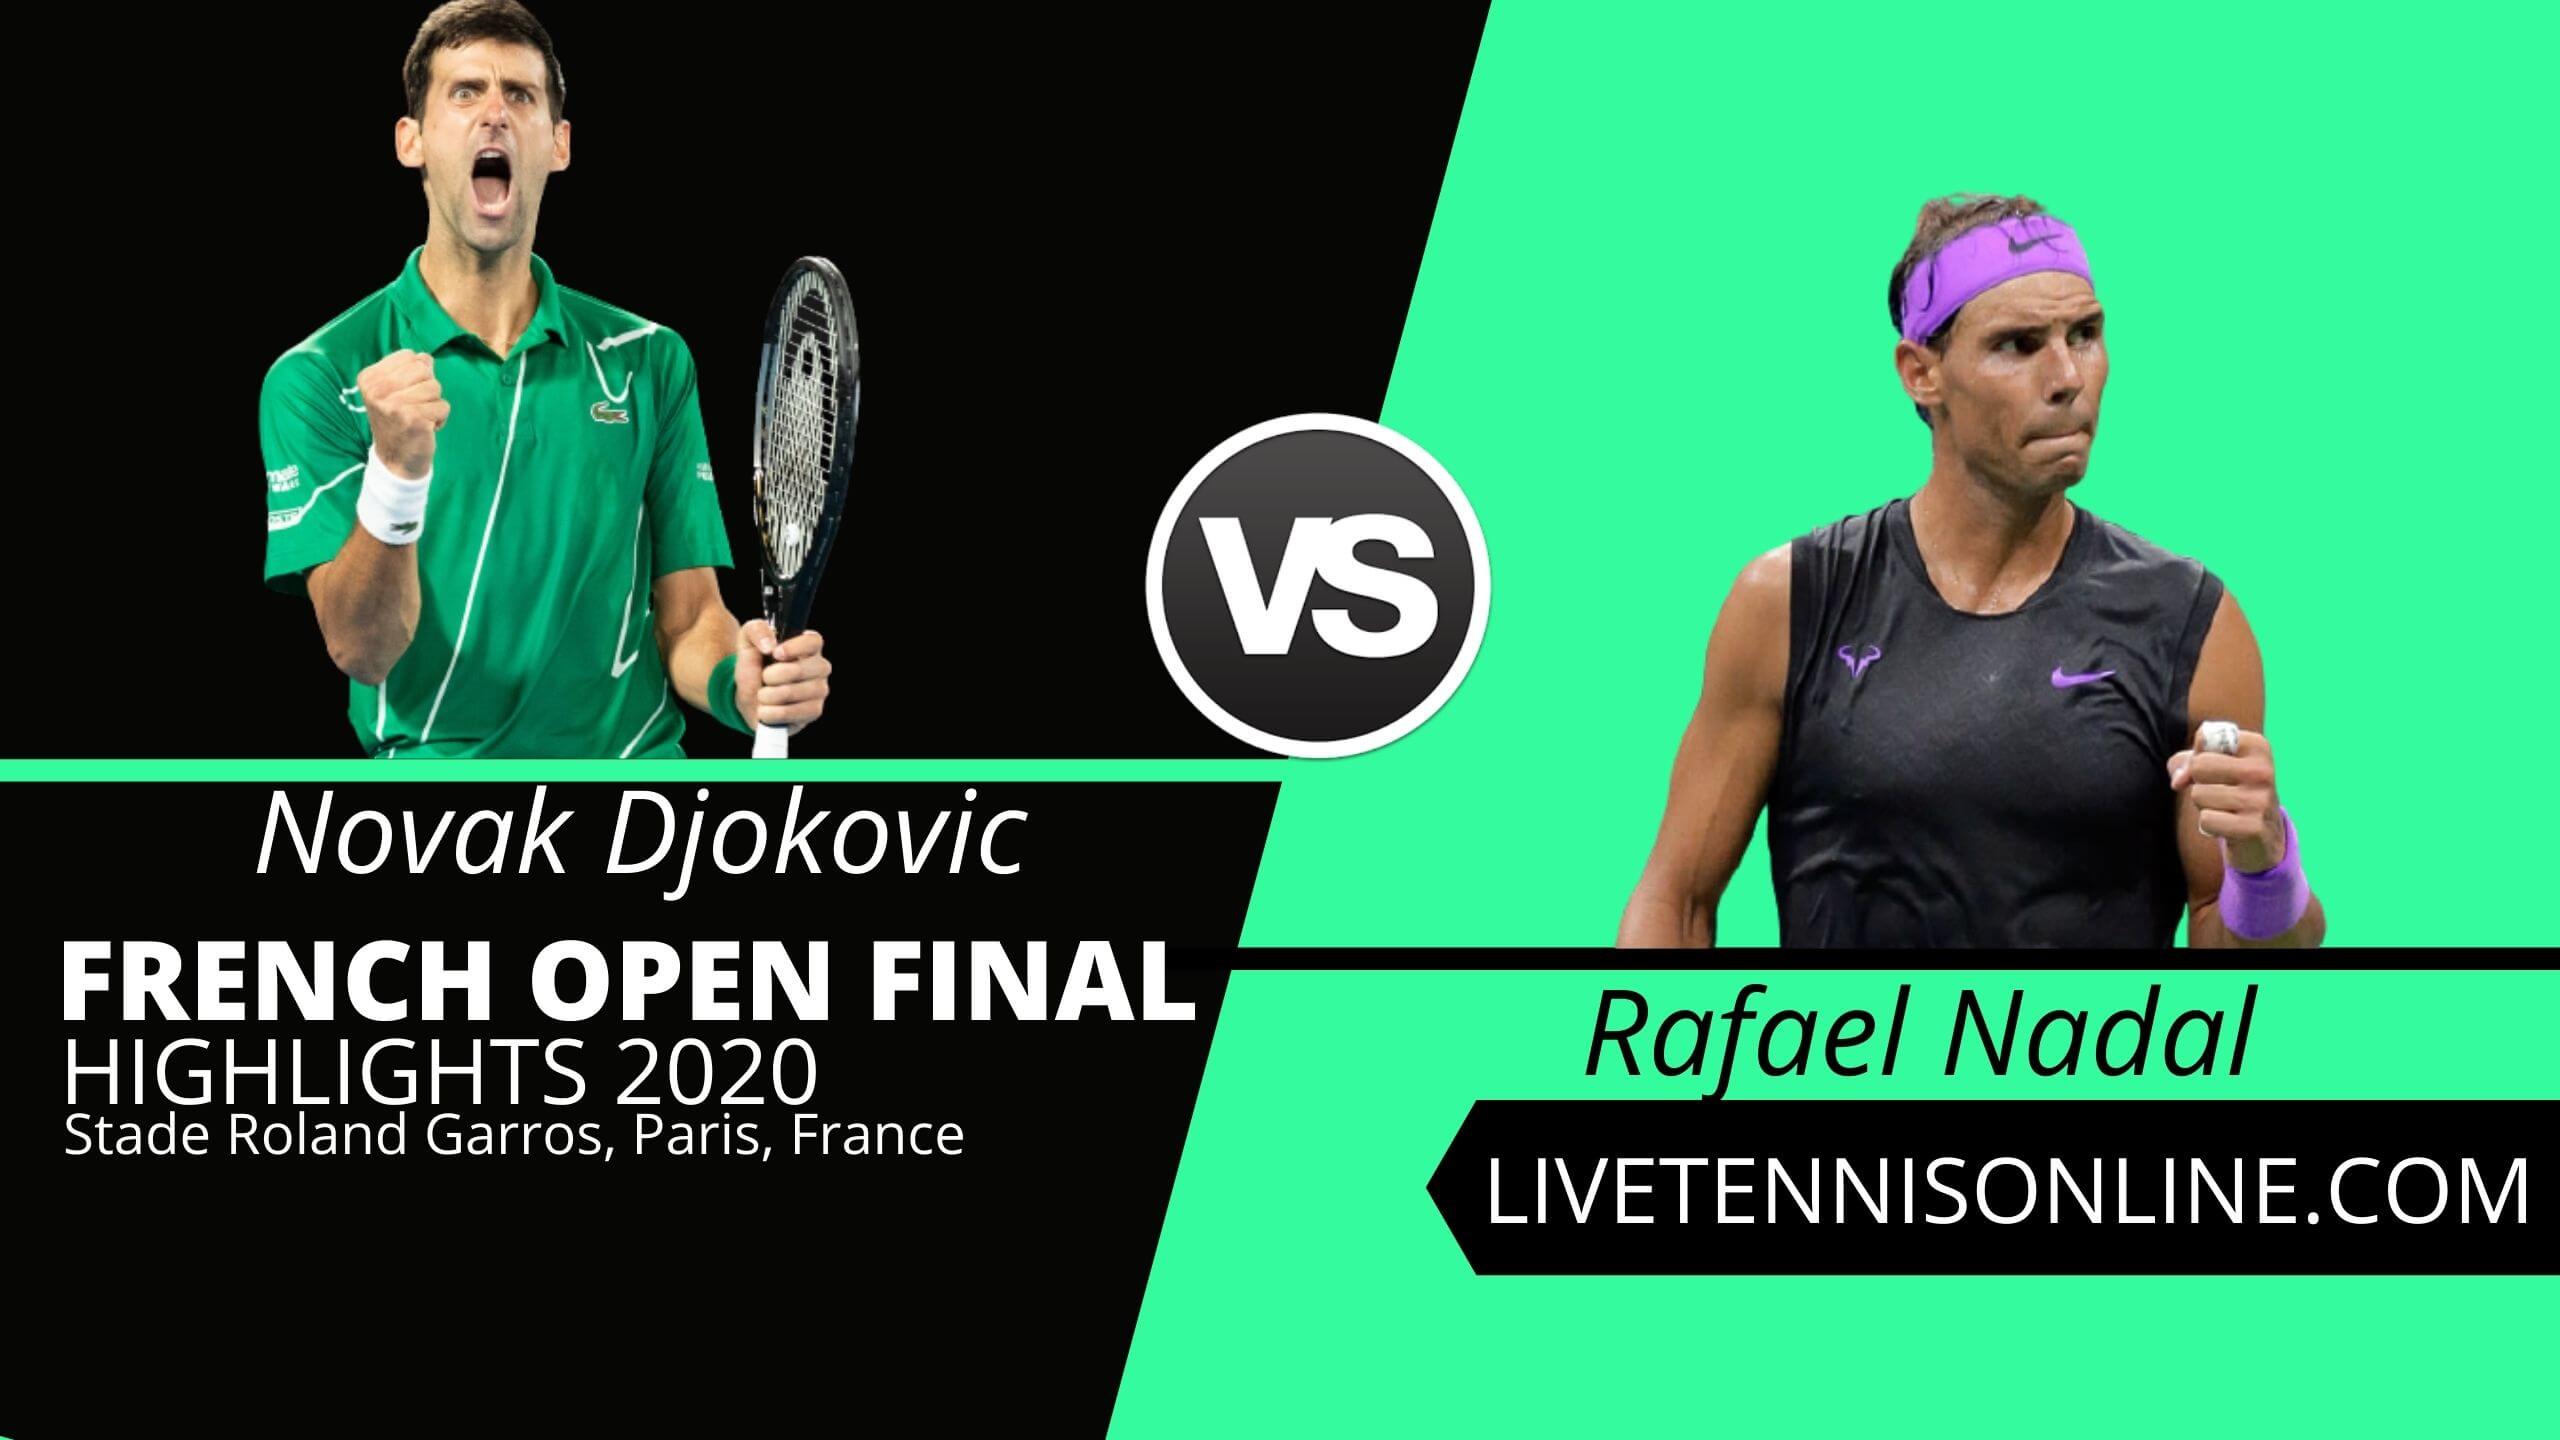 Novak Djokovic vs Rafael Nadal Highlights 2020